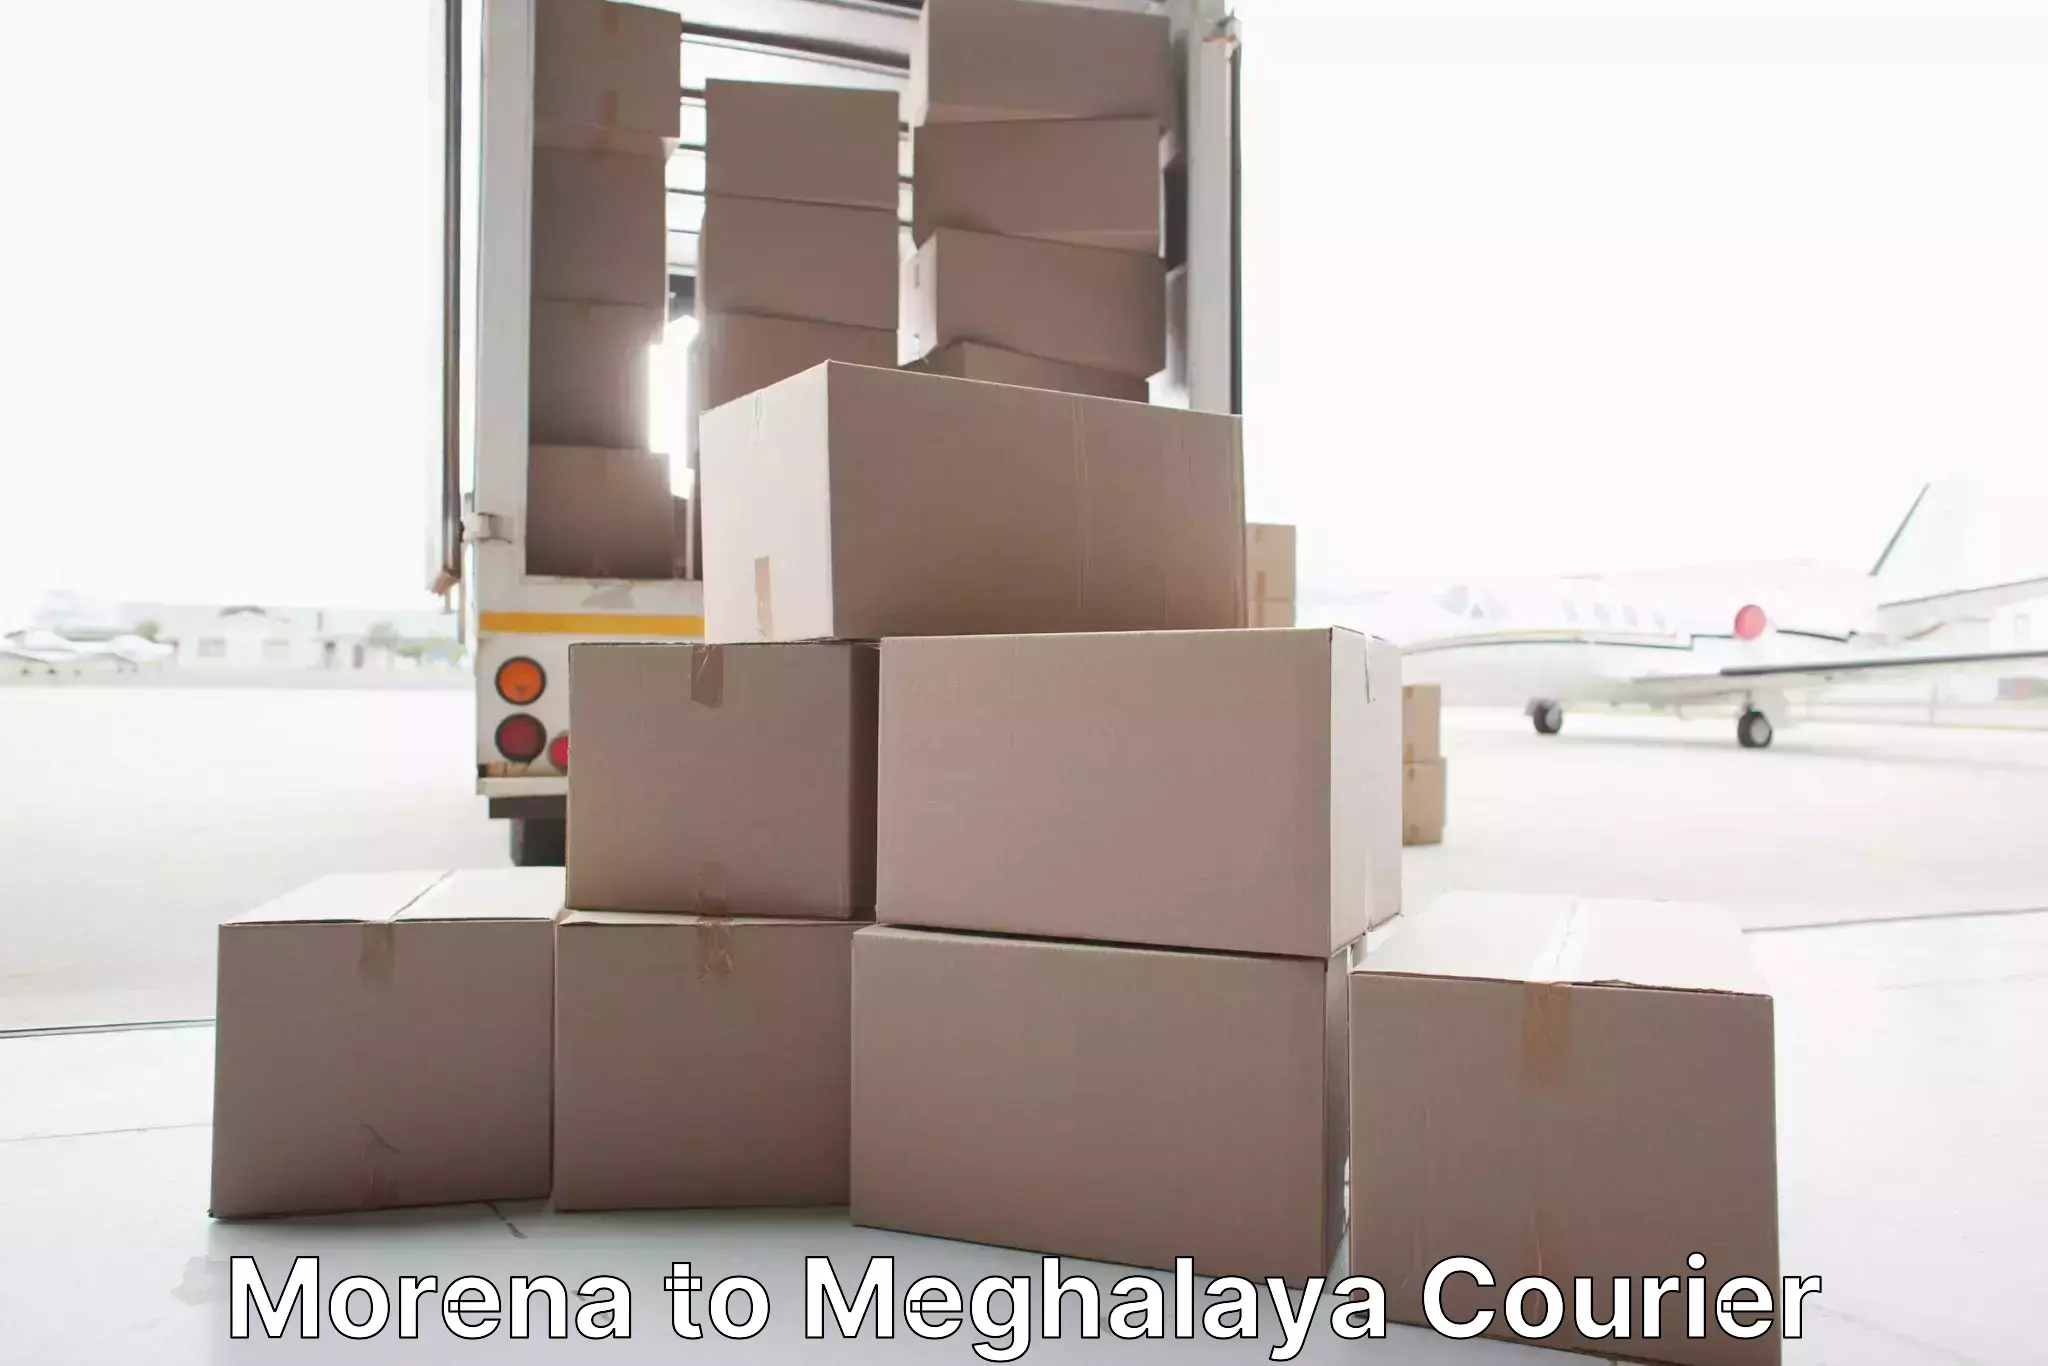 Furniture transport experts Morena to Meghalaya